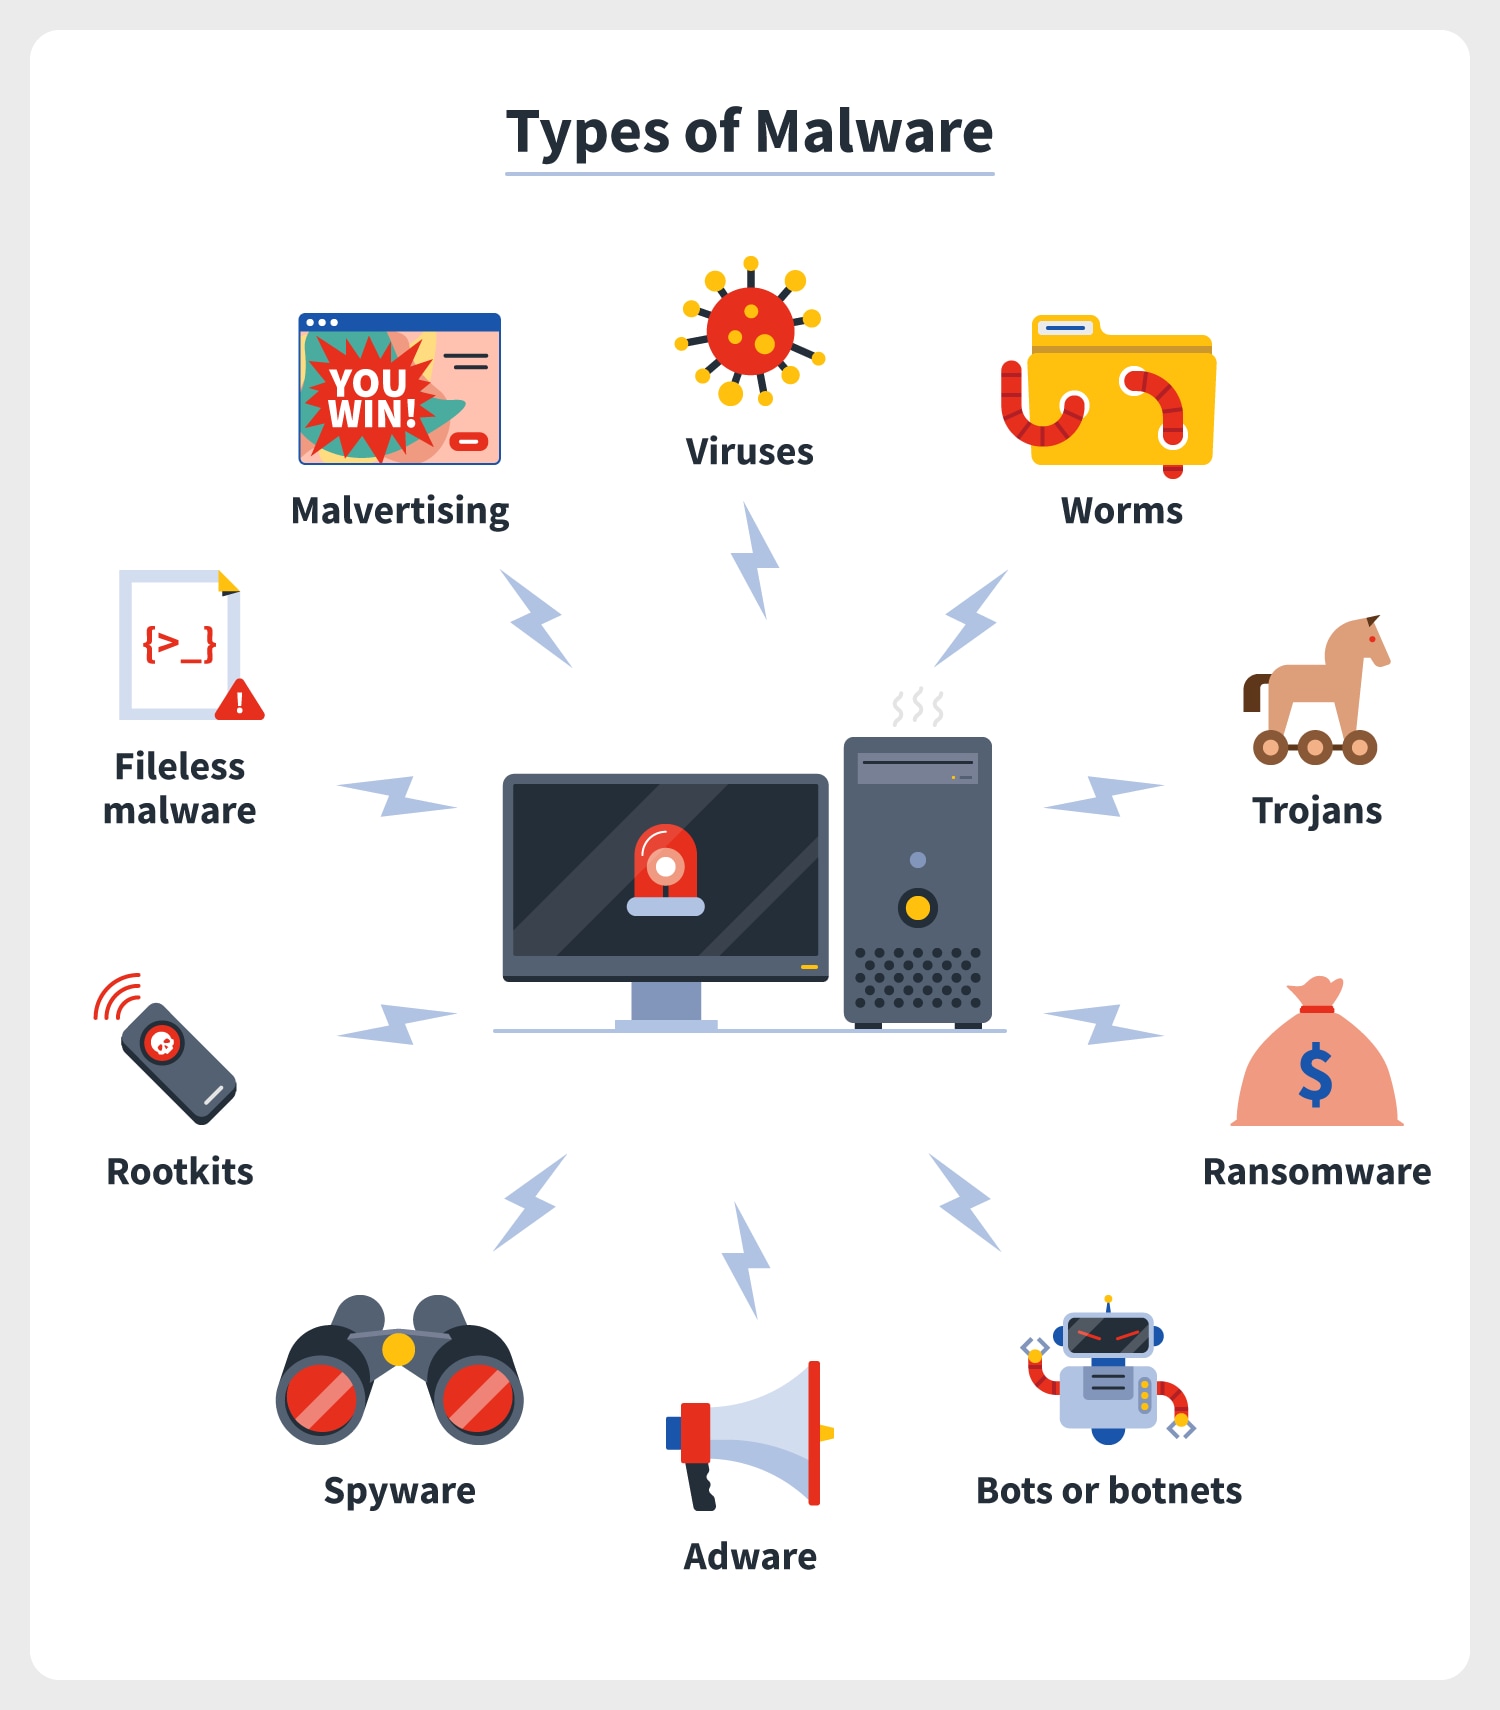 Alle Arten von Spyware und Adware, einschließlich Keyloggern, also Trojanern